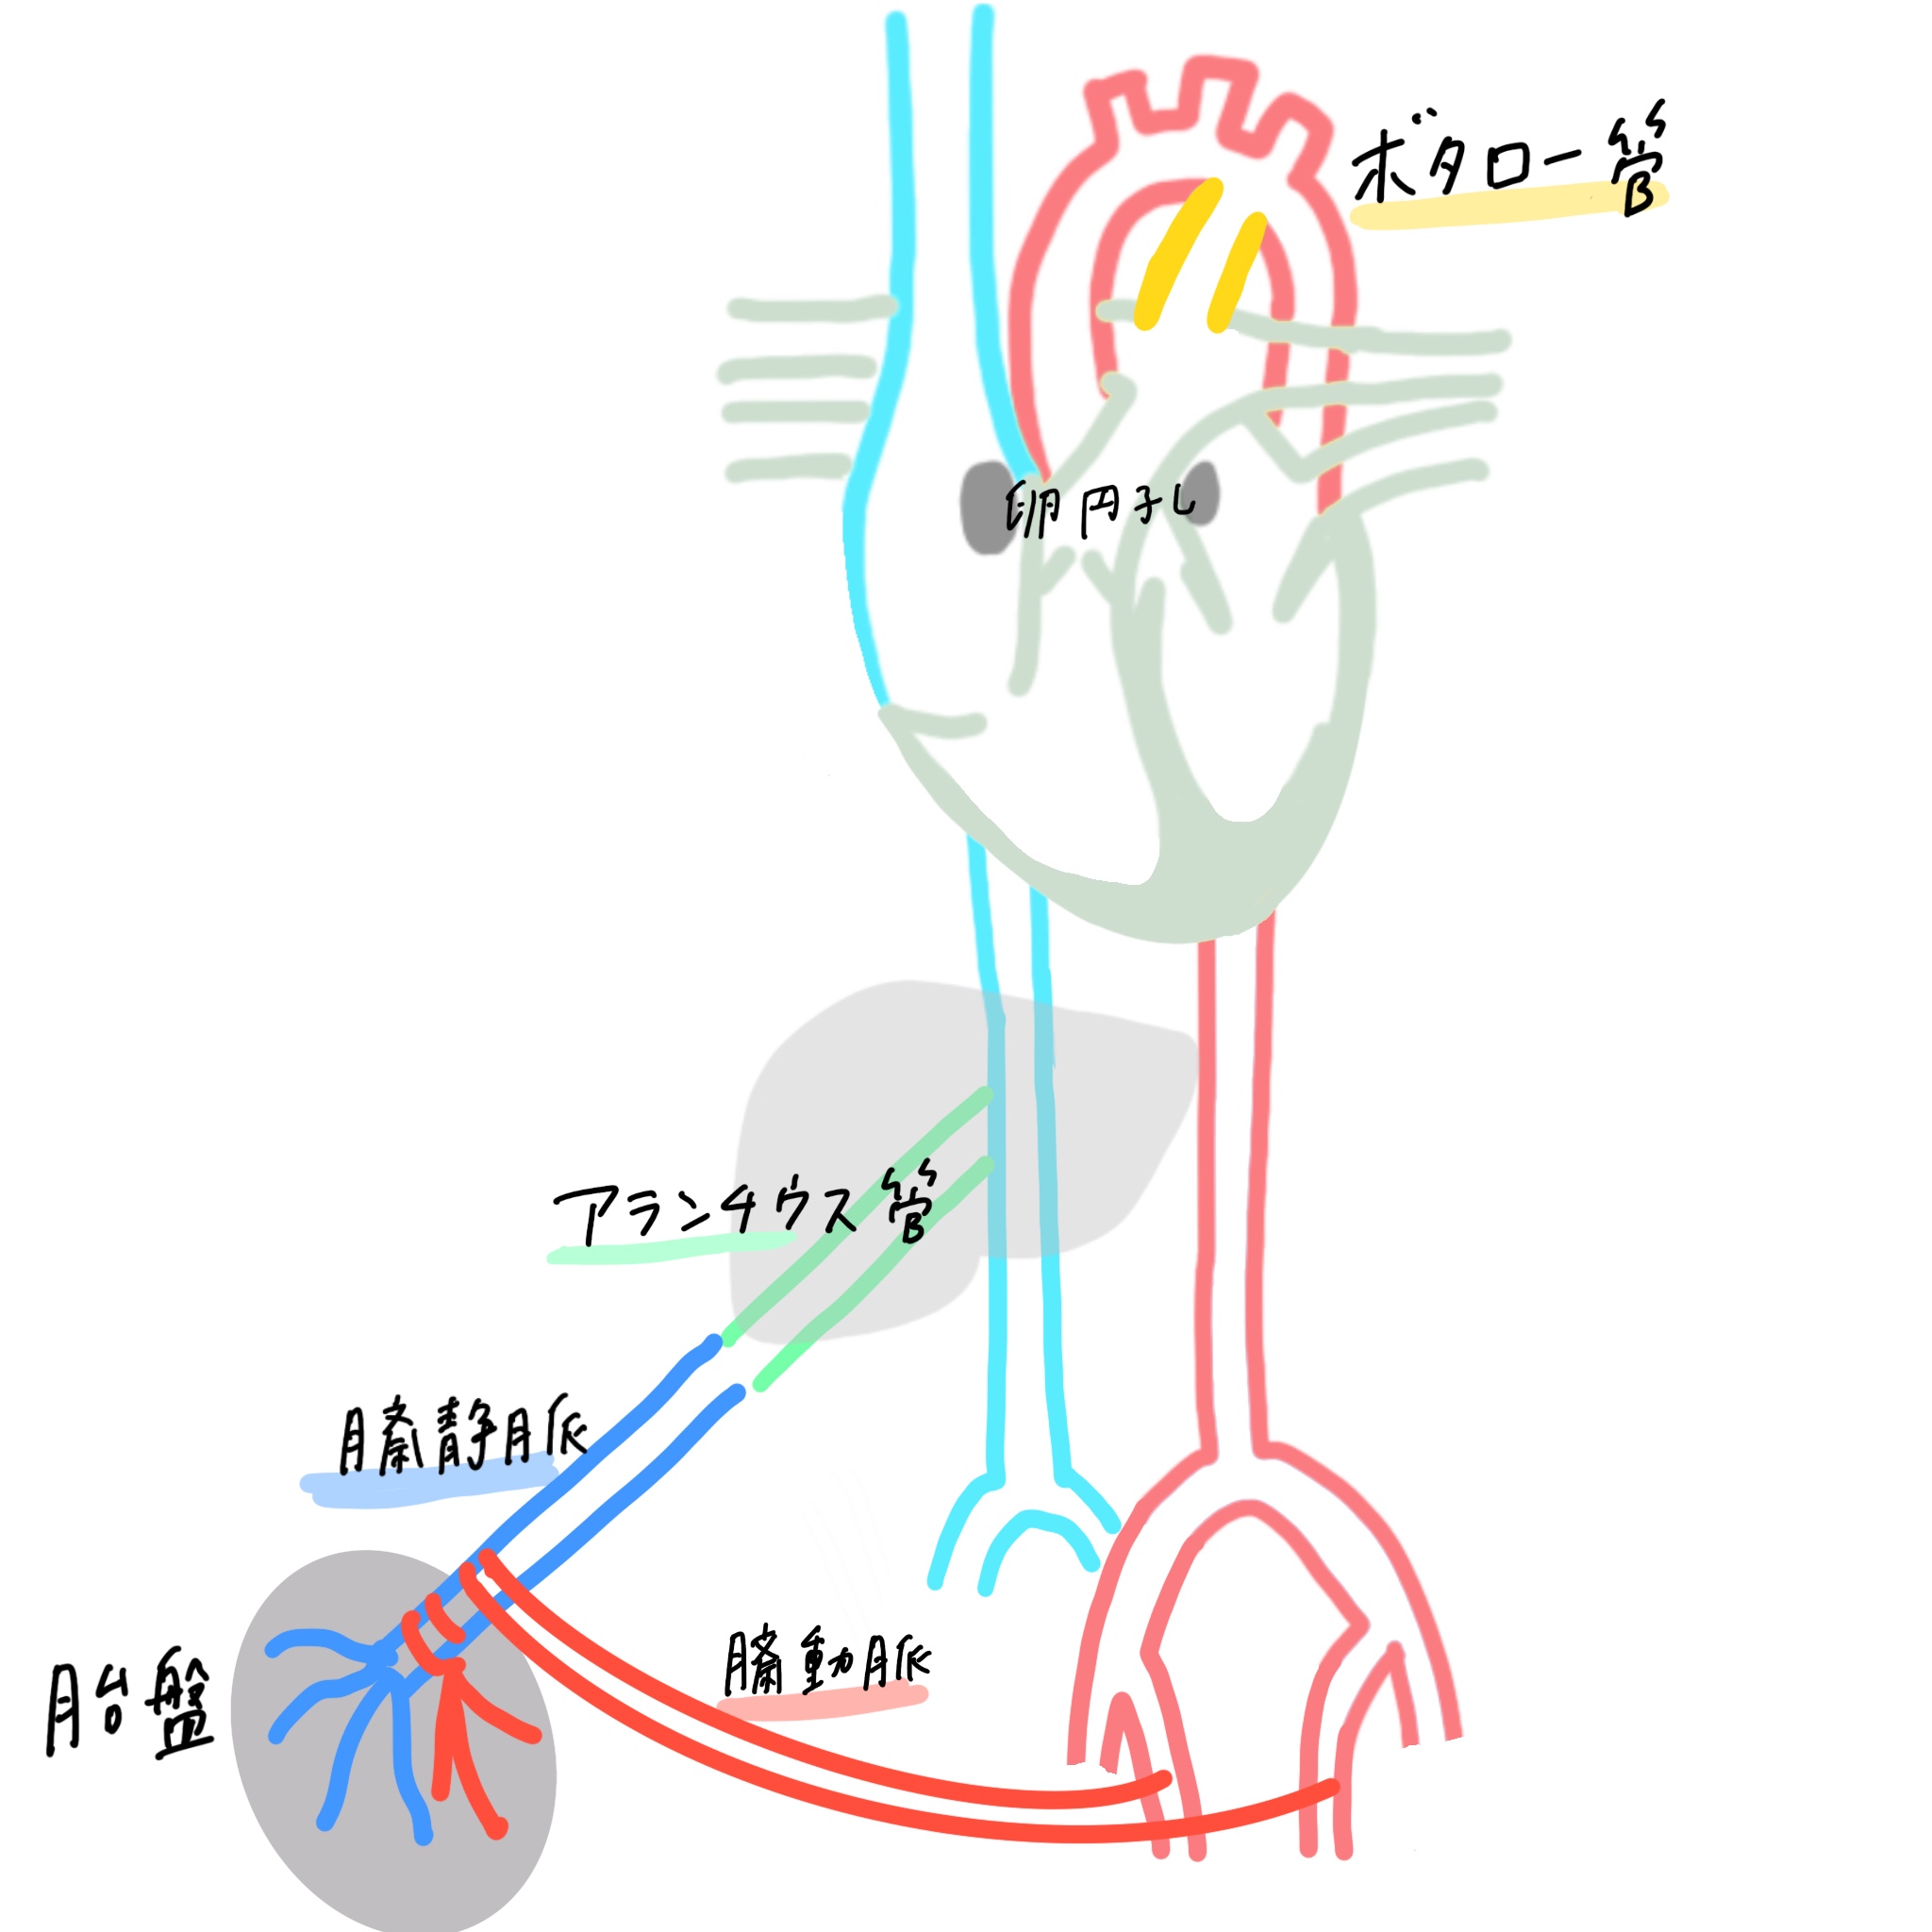 胎児循環 動脈管 静脈管 卵円孔 簡単覚え方 図でわかりやすくアニメ化理解 解剖学